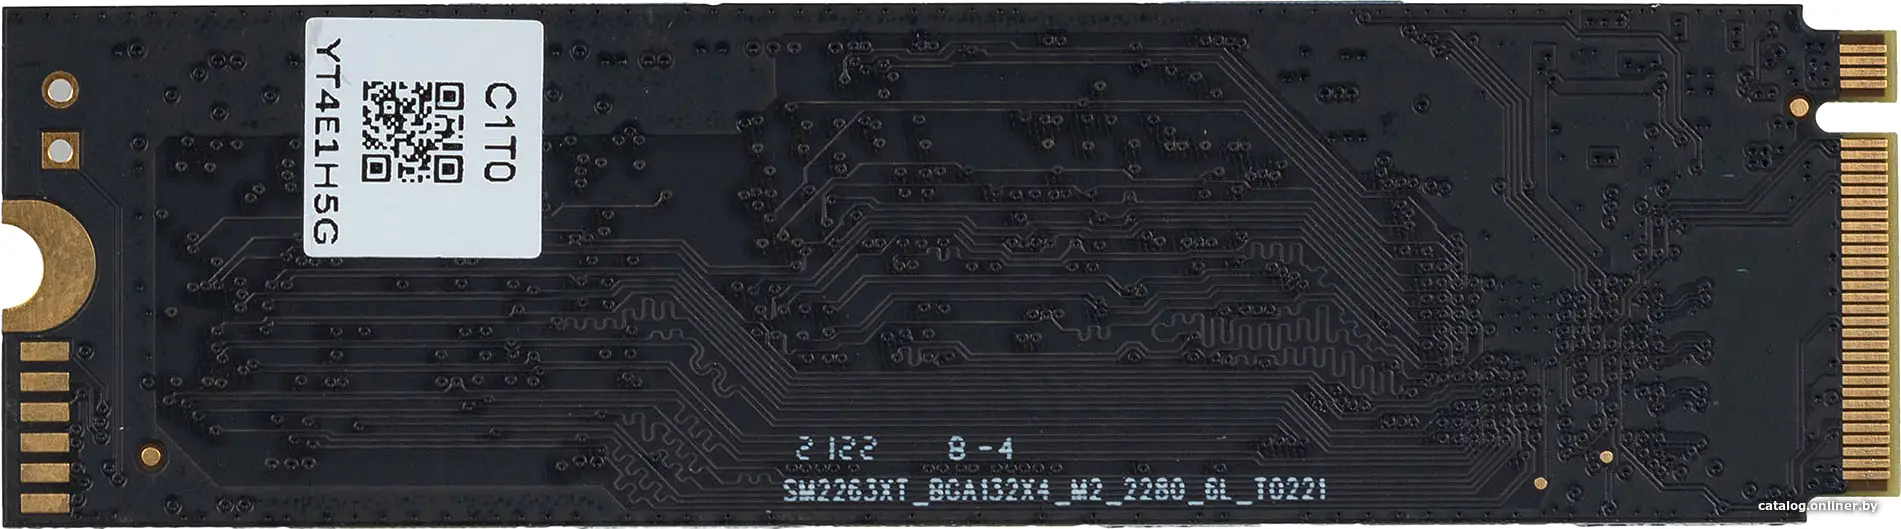 Купить SSD диск Digma 4Tb Top P8 M.2 2280 (DGST4004TP83T), цена, опт и розница